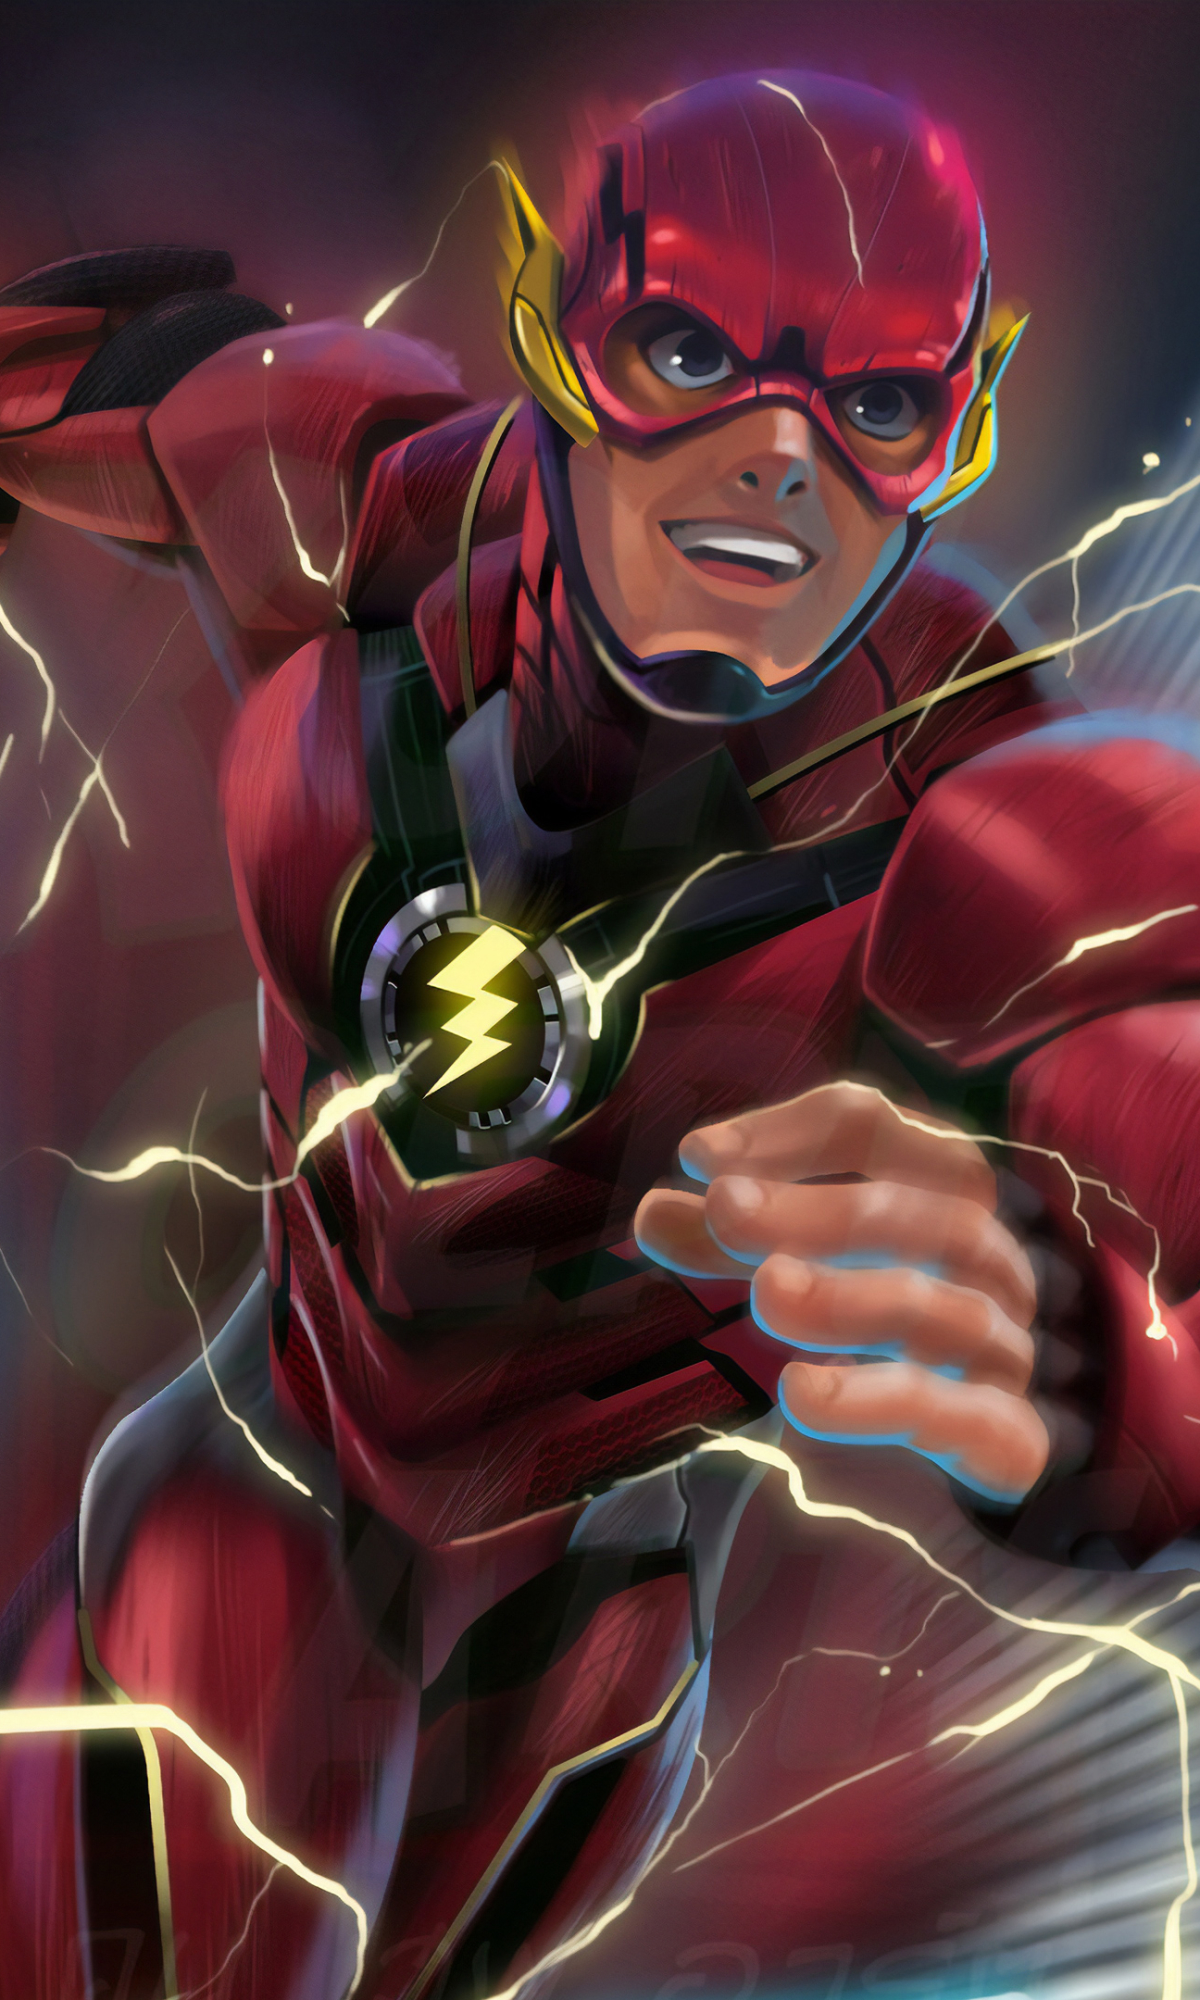 Descarga gratuita de fondo de pantalla para móvil de Destello, Historietas, Dc Comics, The Flash, Barry Allen.